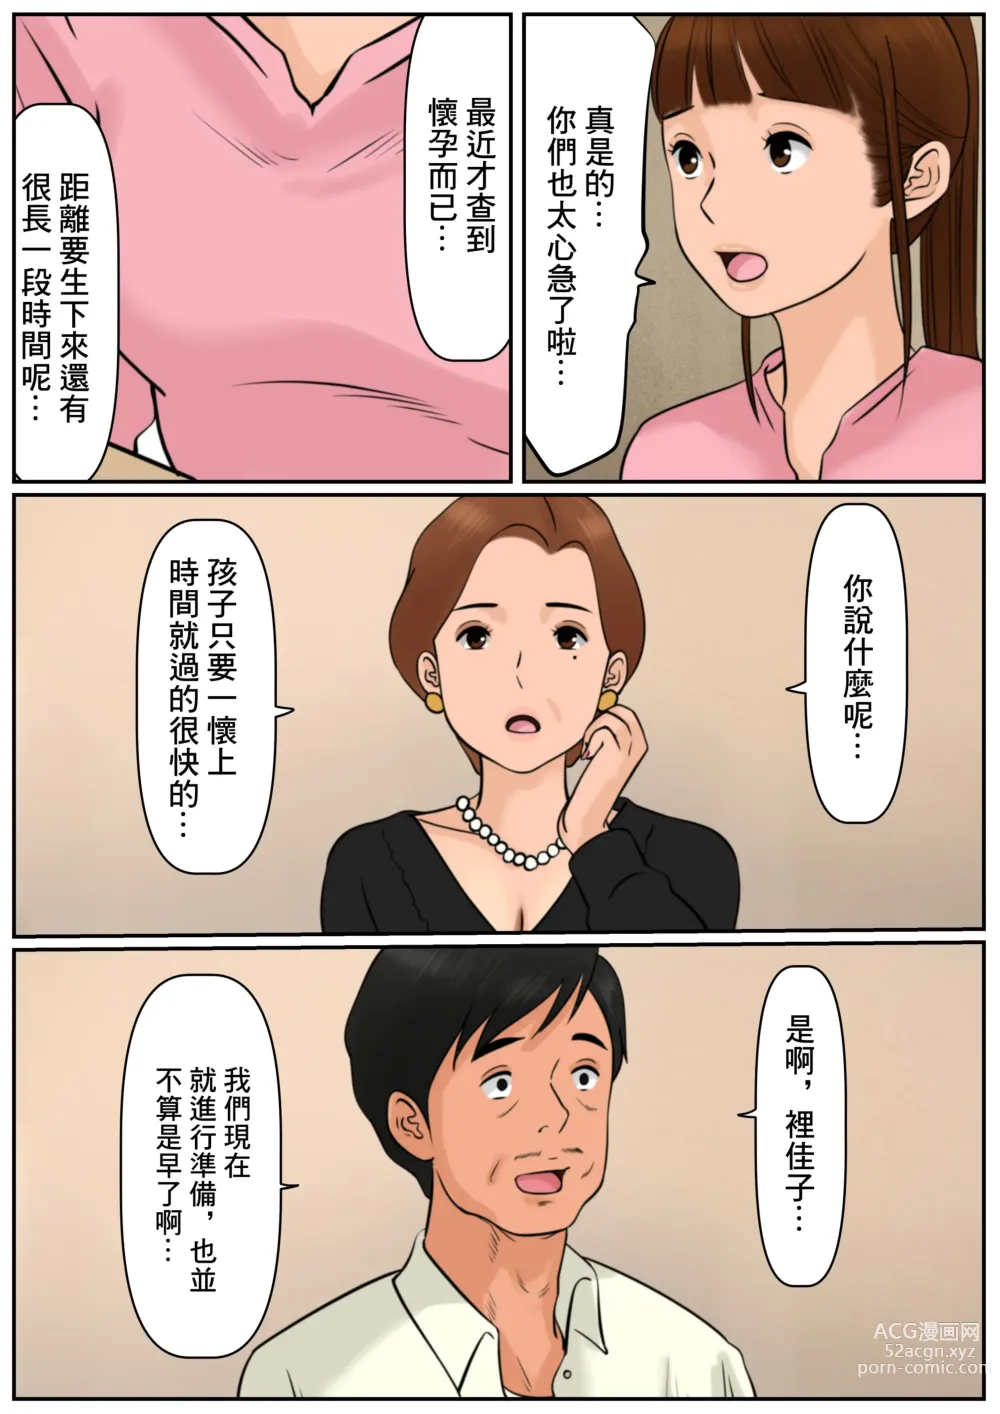 Page 5 of doujinshi 難道你是嫌棄我這個媽媽嗎?